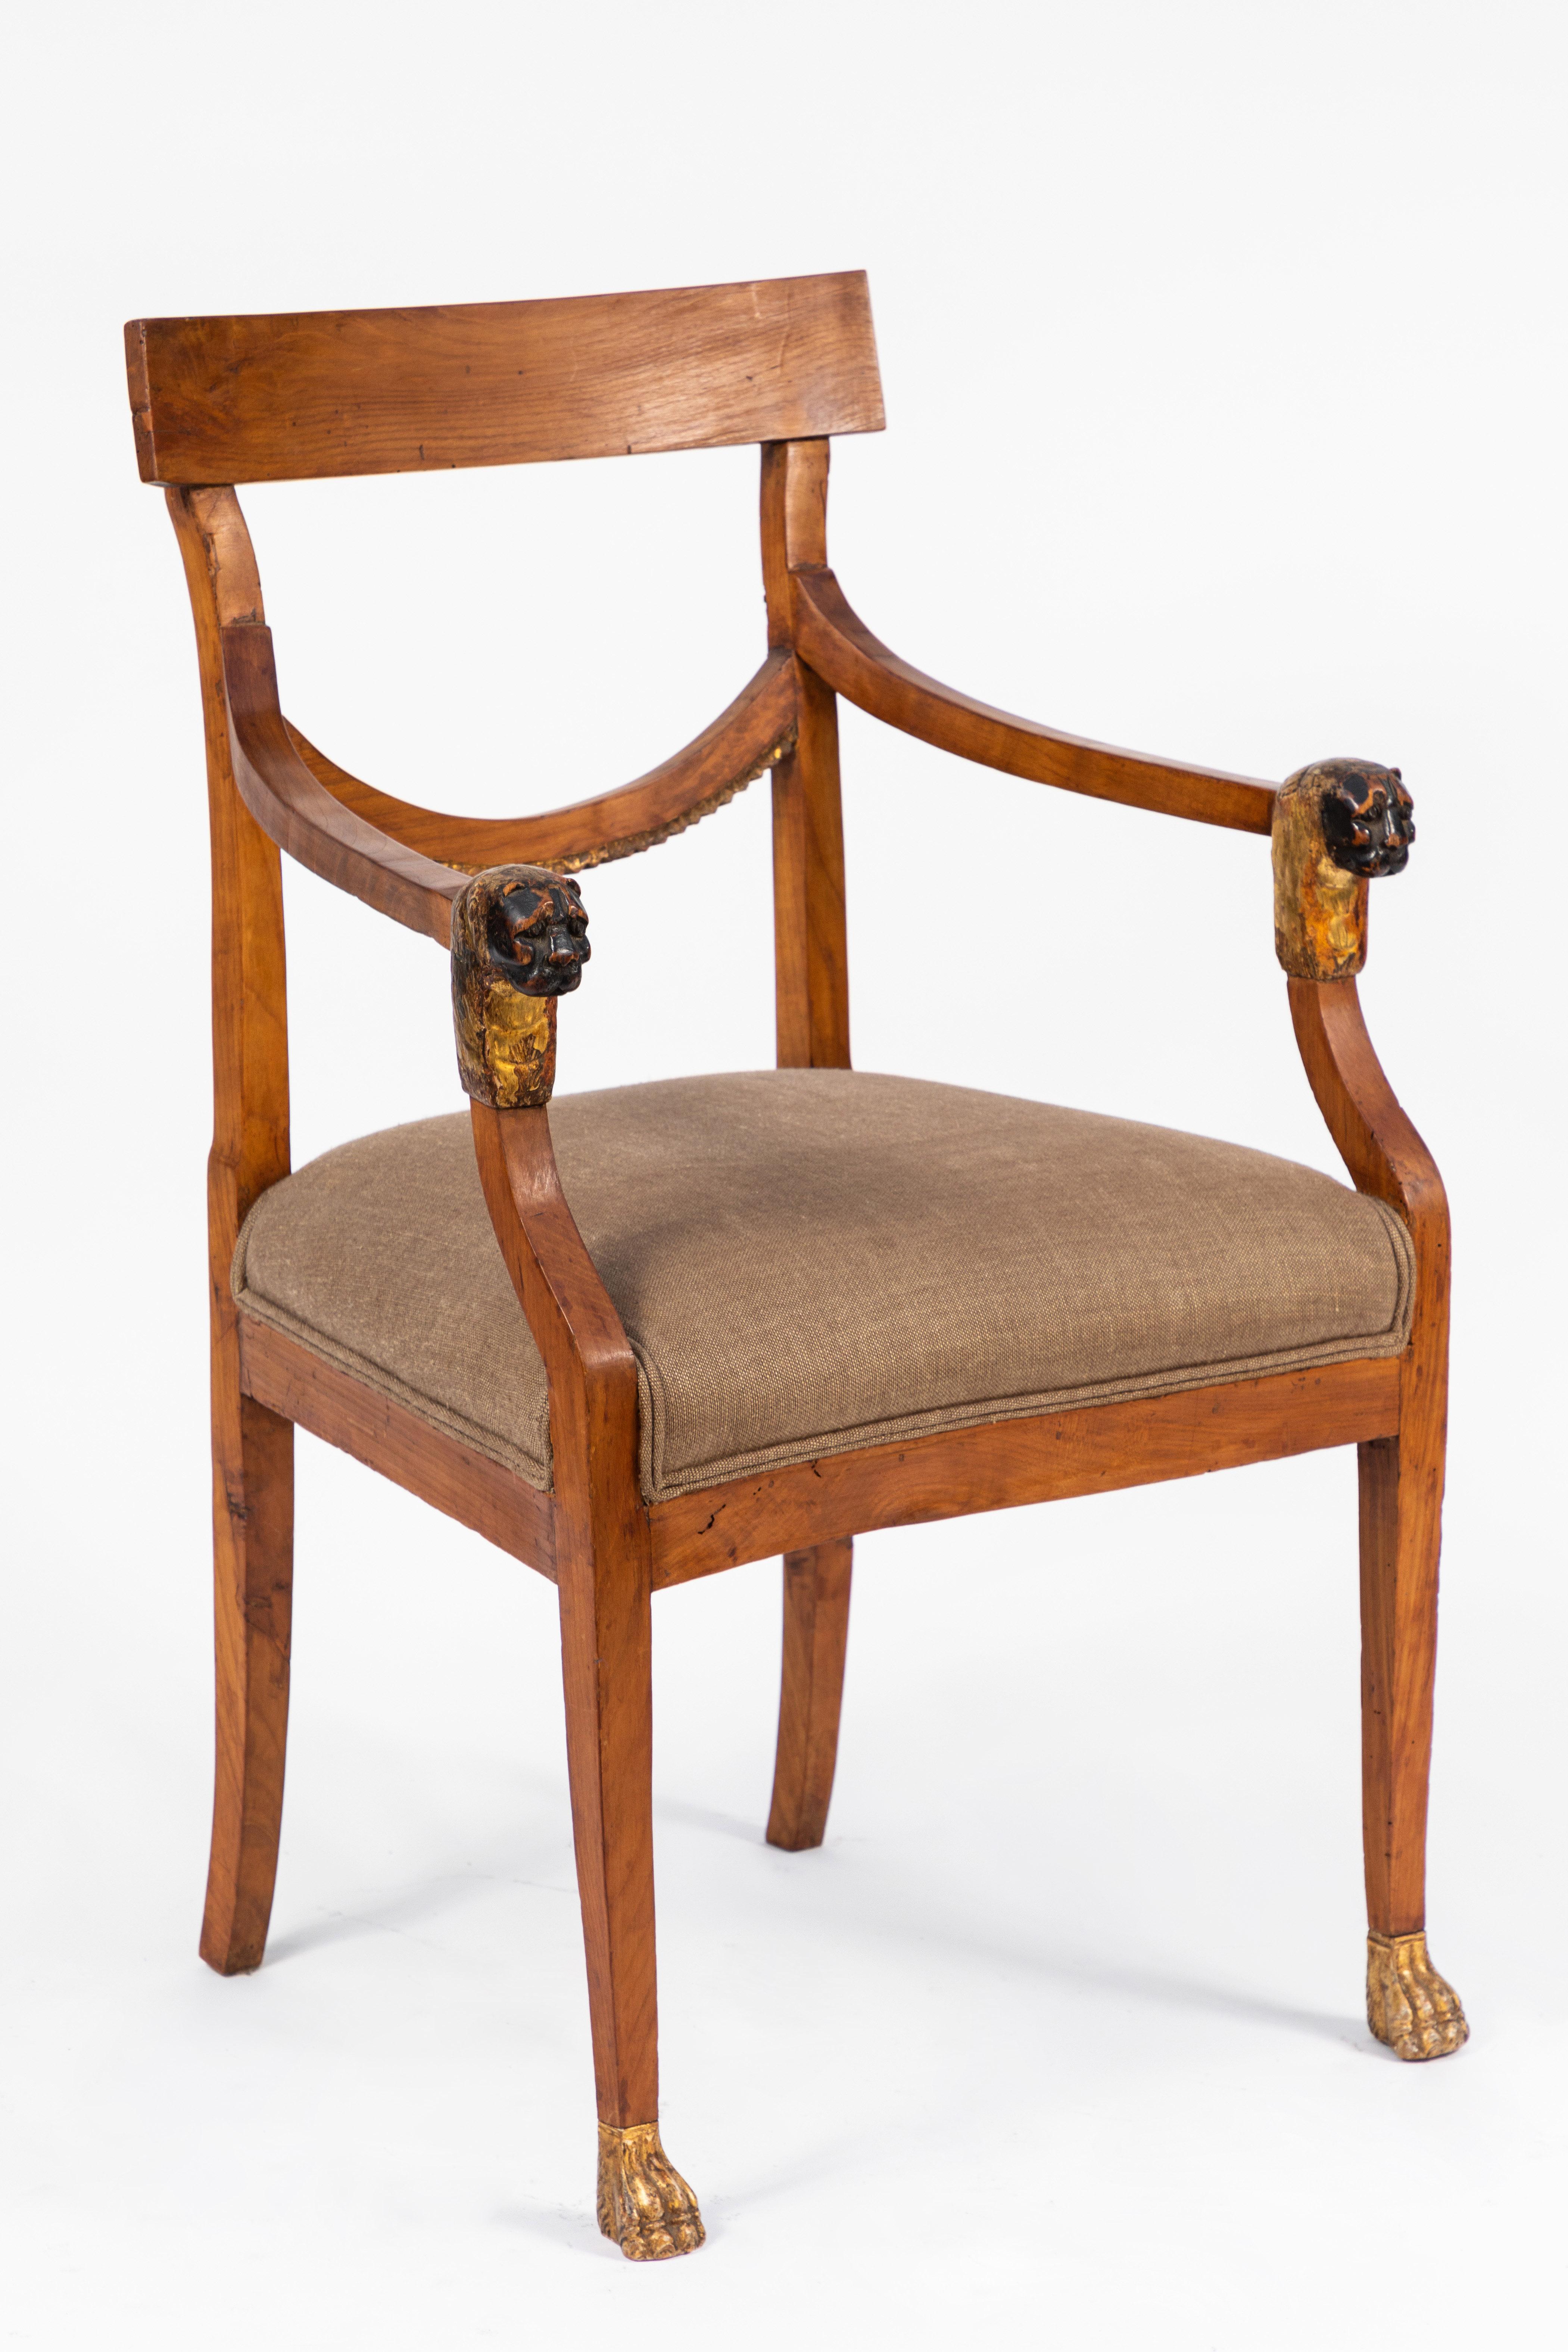 Paire de fauteuils italiens du XIXe siècle en noyer avec détails en bois doré sculpté. Tête de lion sculptée et motif de pattes.